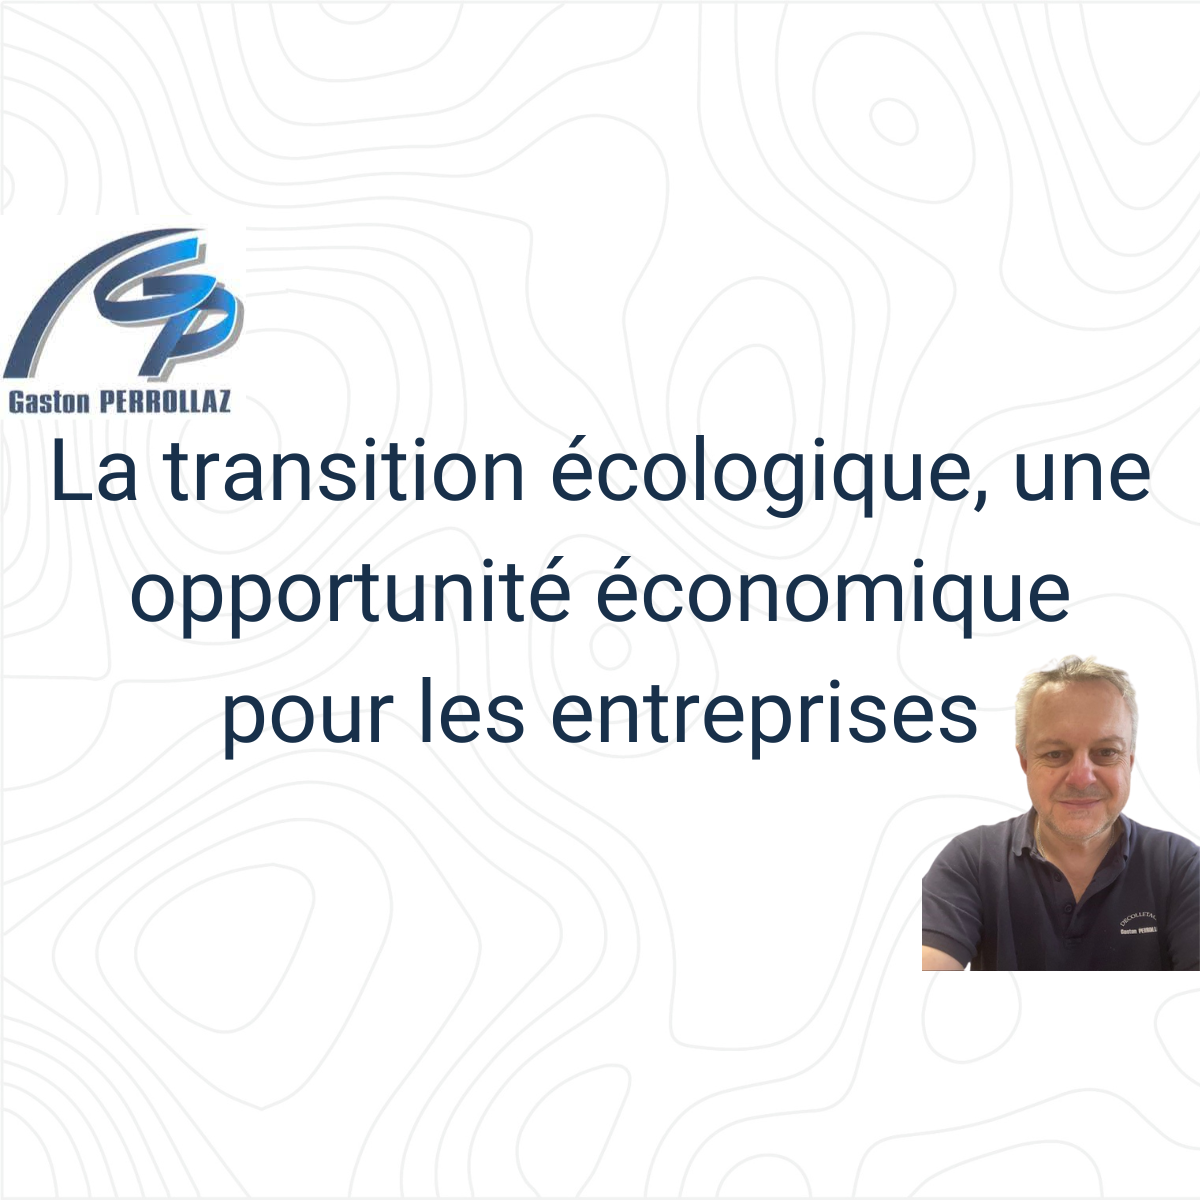 La transition écologique, une opportunité économique pour les entreprises